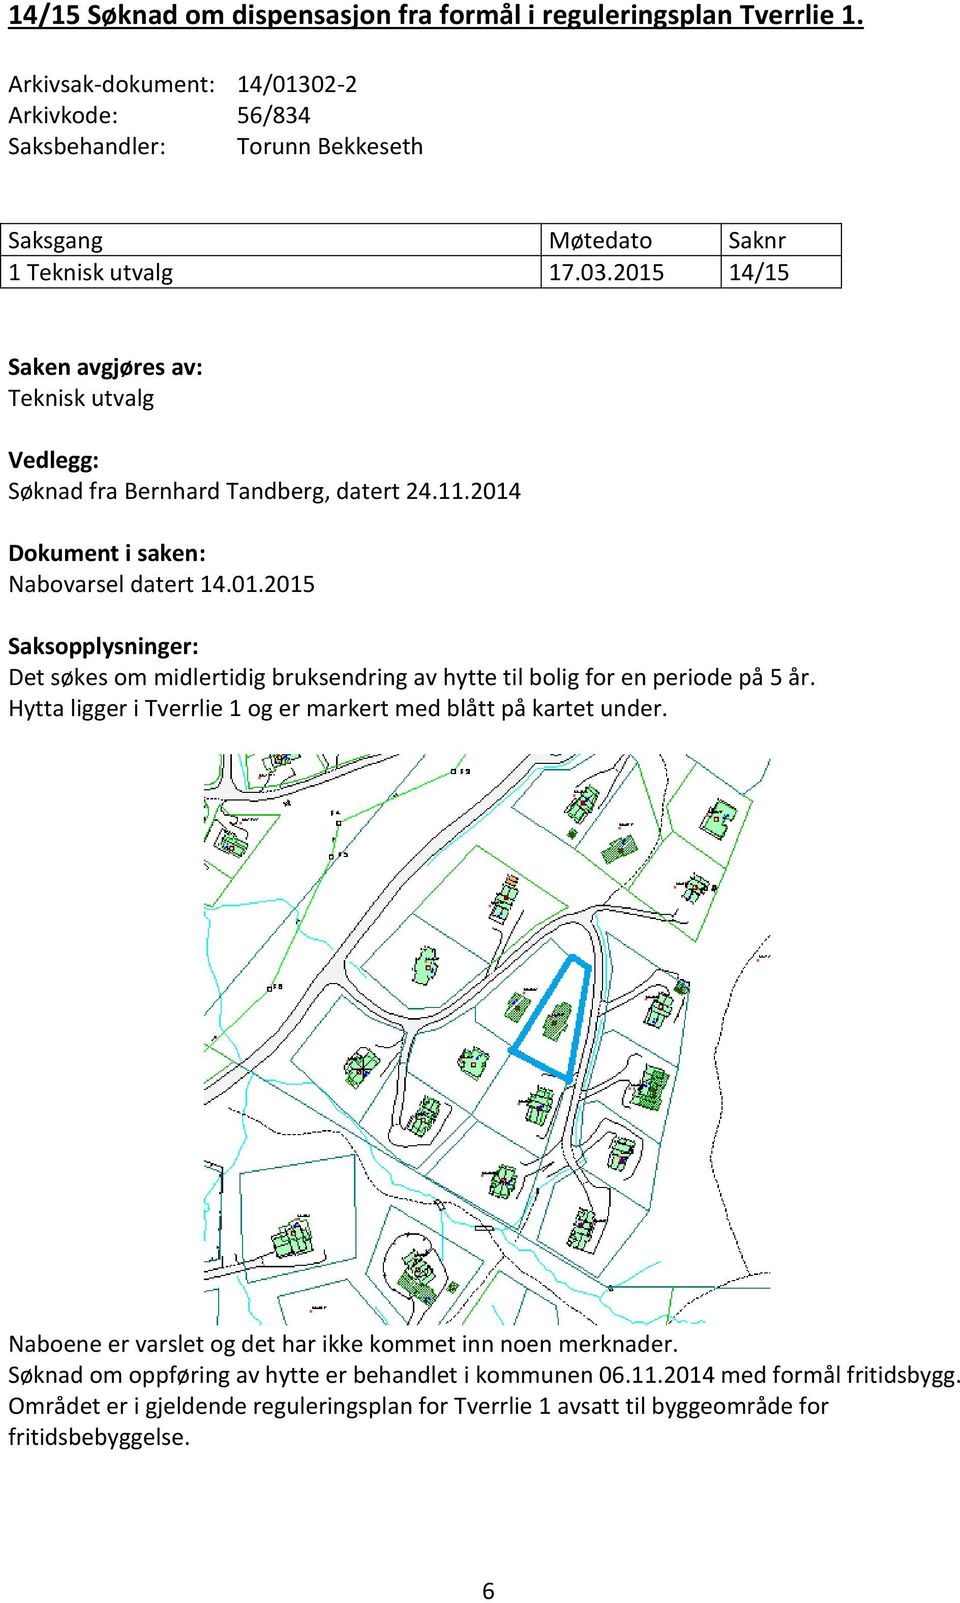 Hytta ligger i Tverrlie 1 og er markert med blått på kartet under. Naboene er varslet og det har ikke kommet inn noen merknader. Søknad om oppføring av hytte er behandlet i kommunen 06.